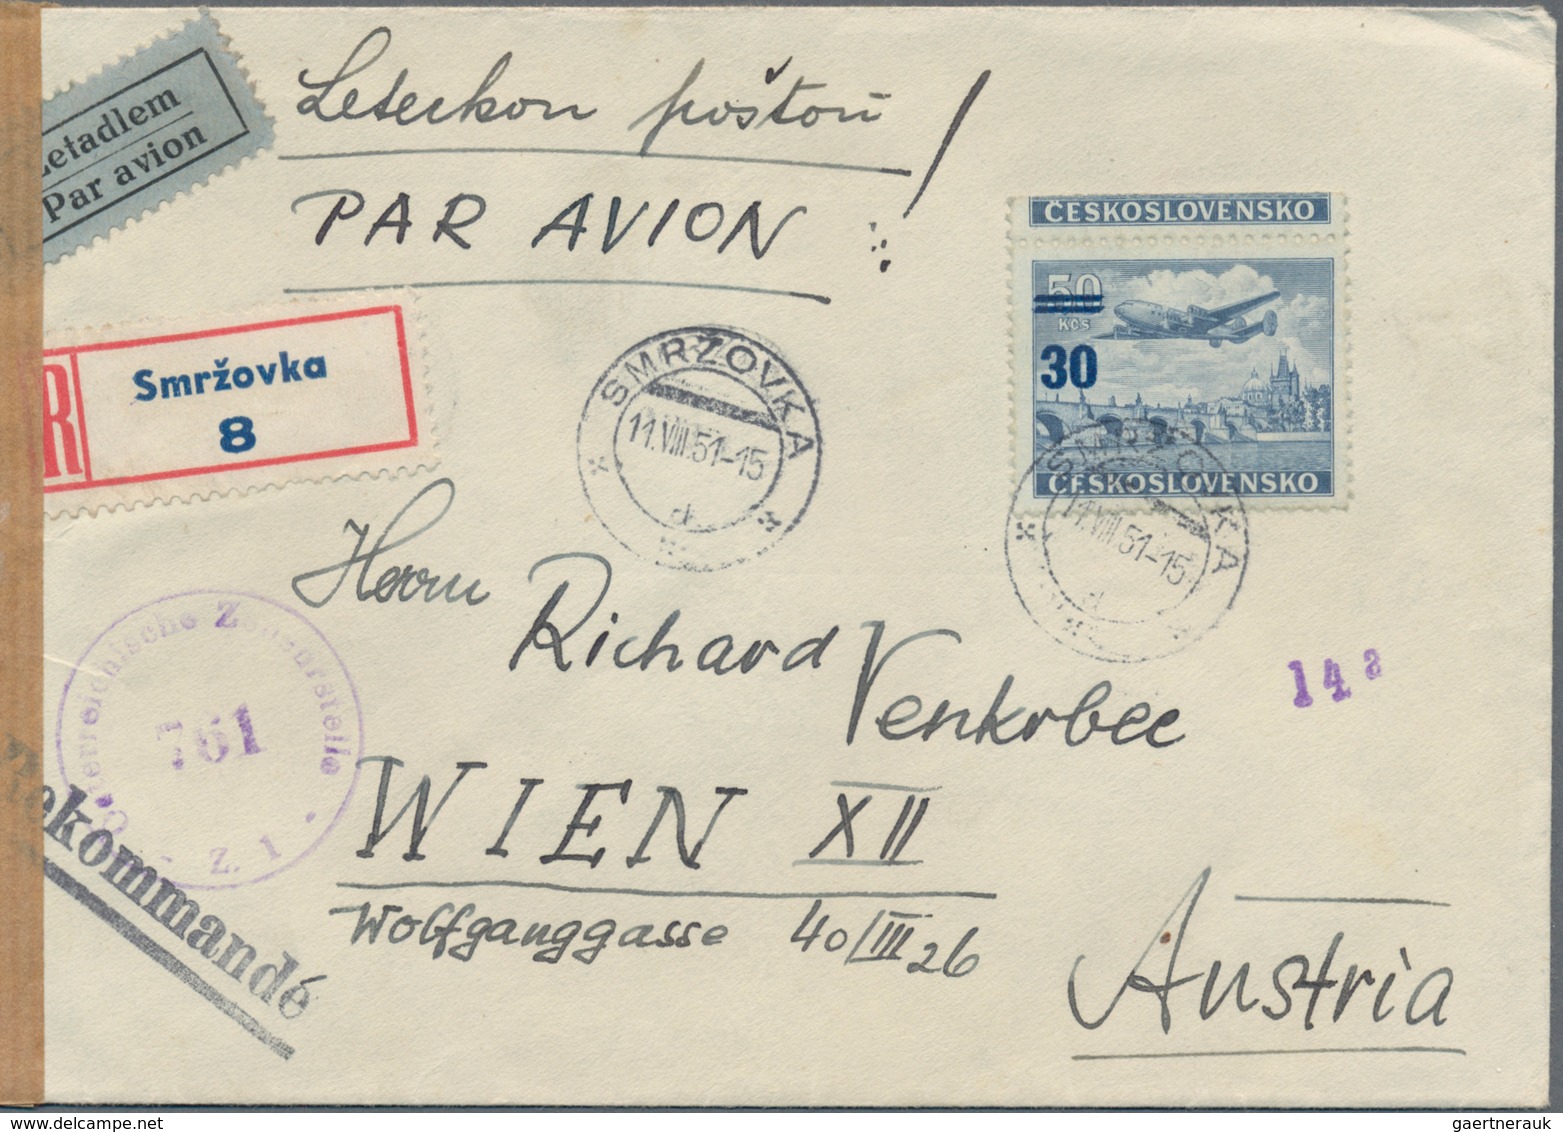 Tschechoslowakei: 1919-1970, Posten mit rund 200 Briefen, Belegen Ganzsachen und FDC, dabei Zensur,